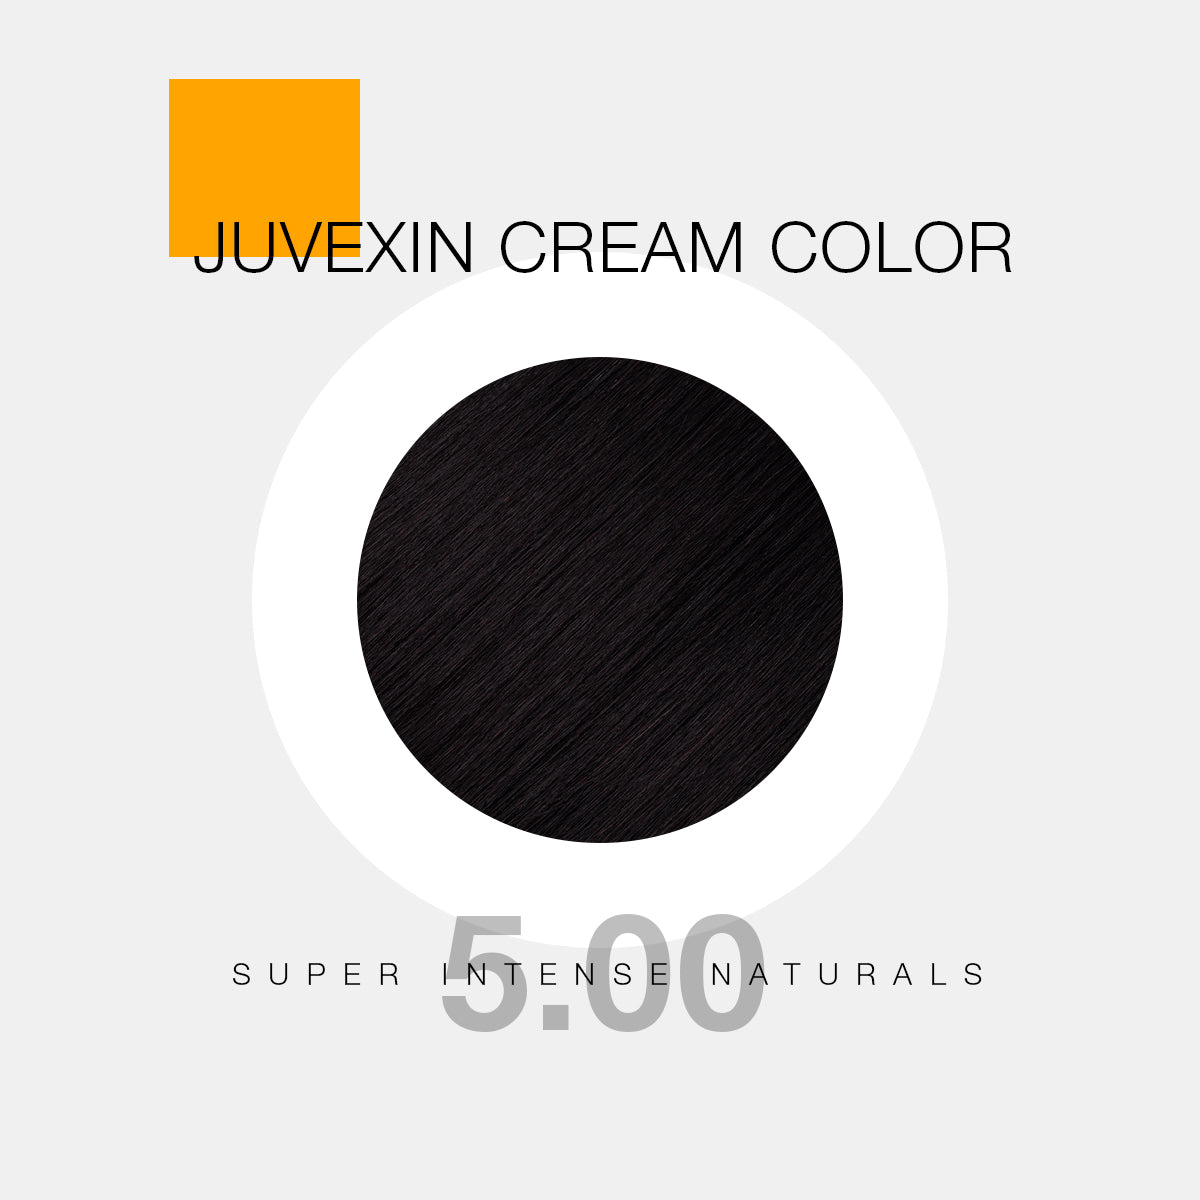 Juvexin Cream Color Pro Super Intense Naturals